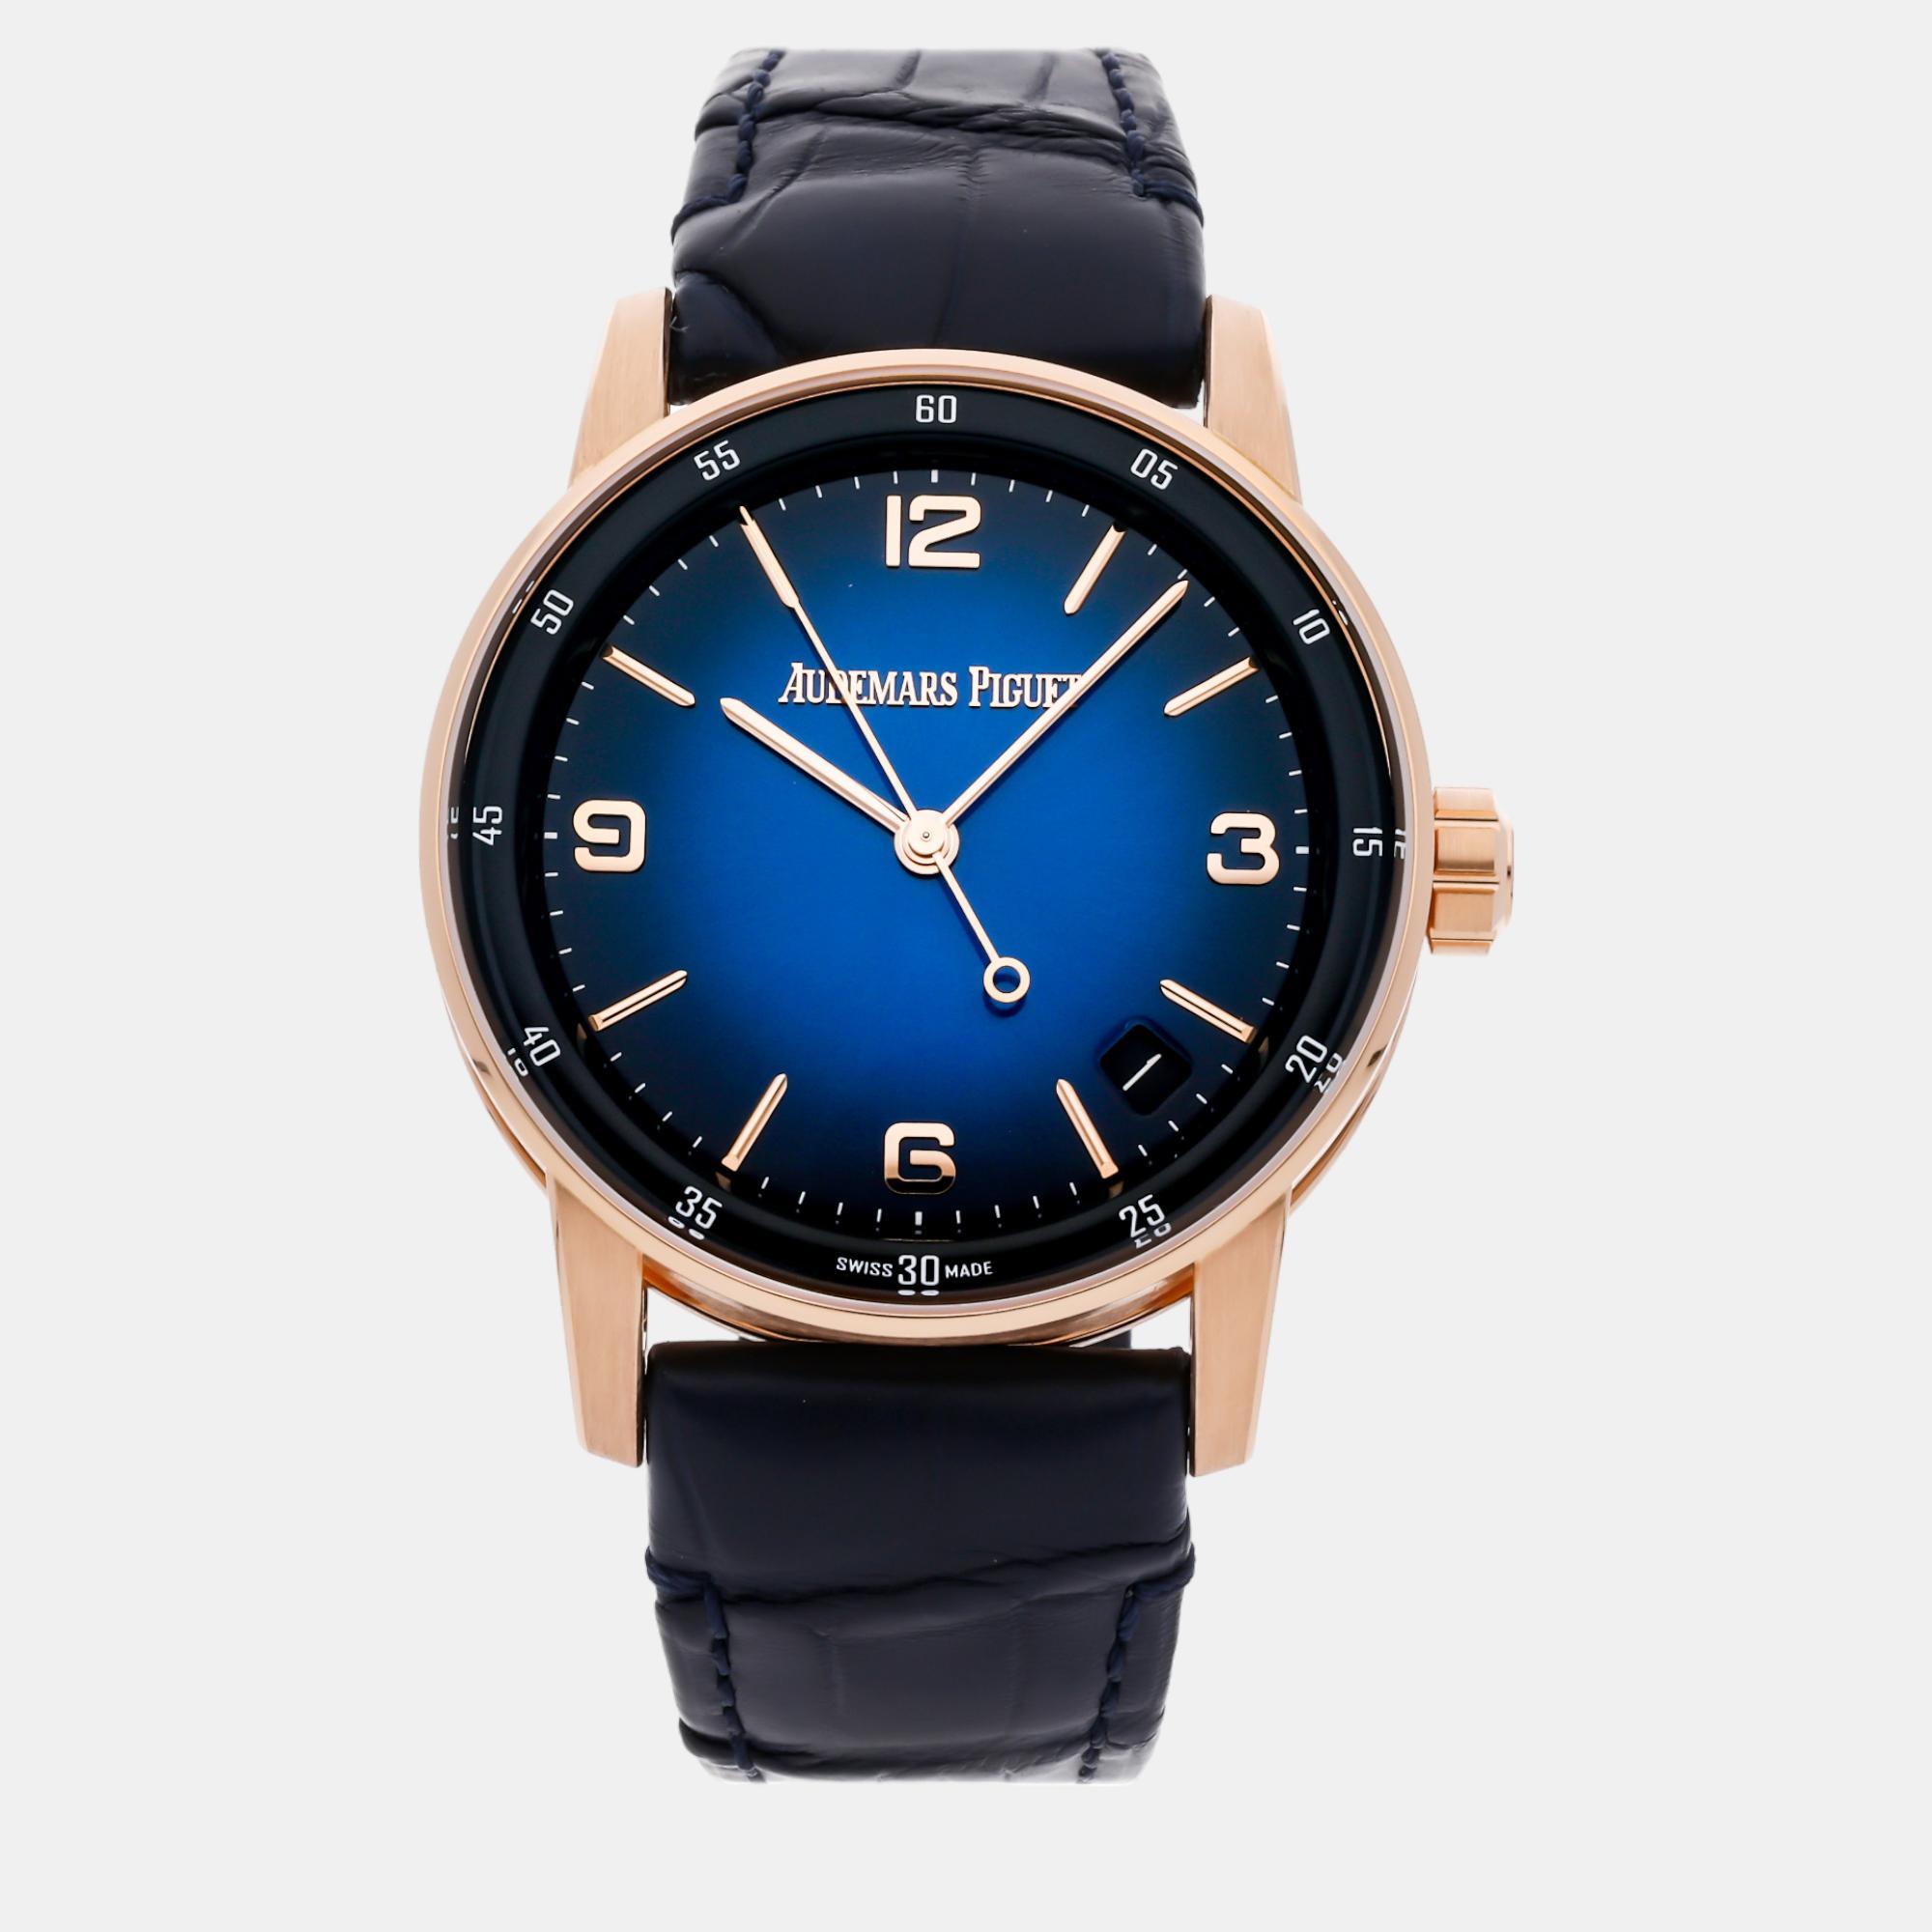 Audemars piguet blue 18k rose gold code 11.59 15210or.oo.a028cr.01 automatic men's wristwatch 41 mm